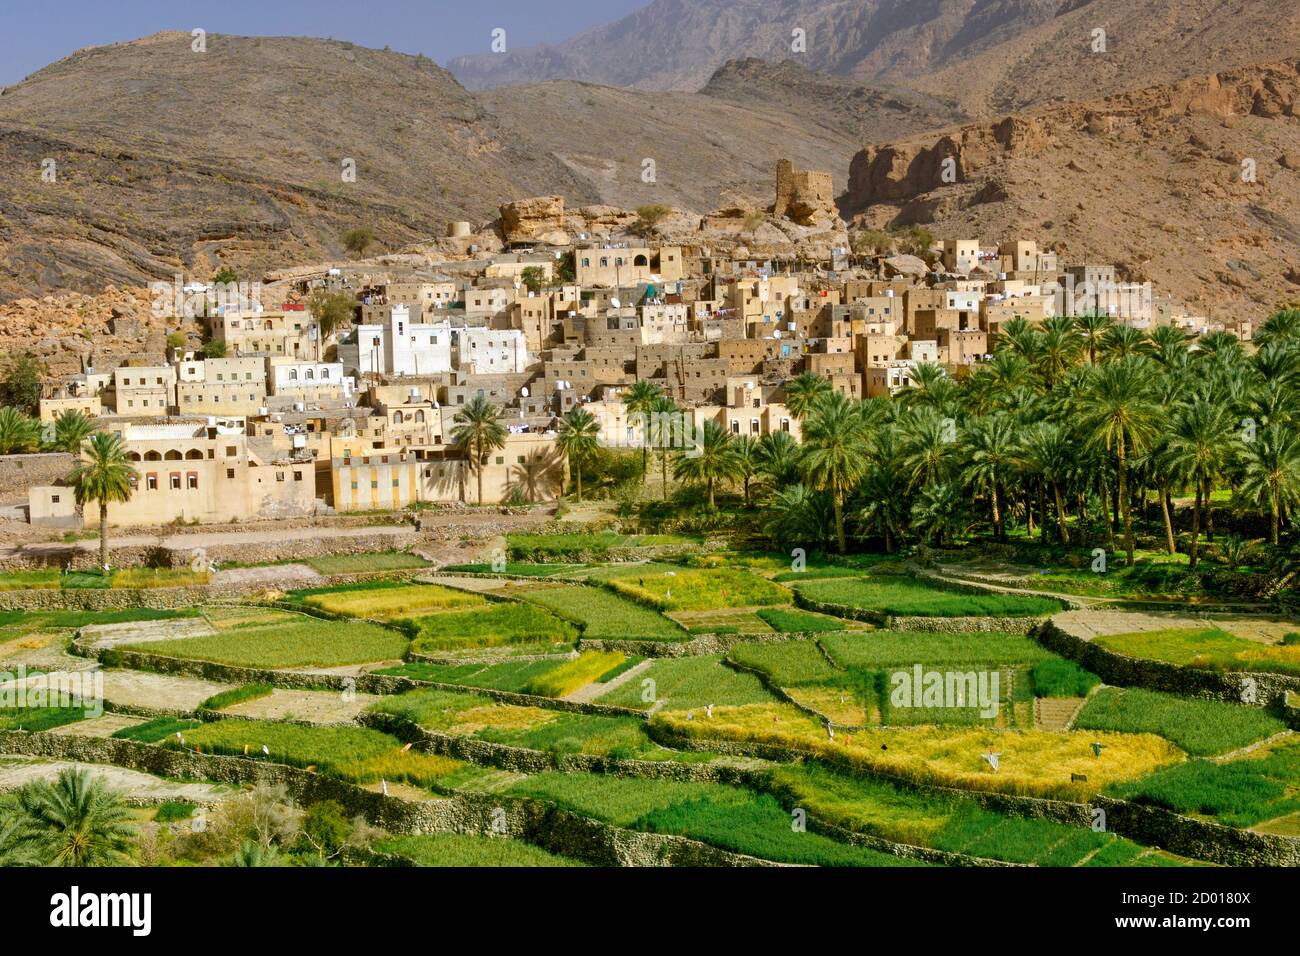 Le village de Bilad SEET et ses plantations à Wadi Bani Auf dans les montagnes Jebel Akhdar d'Oman. Banque D'Images